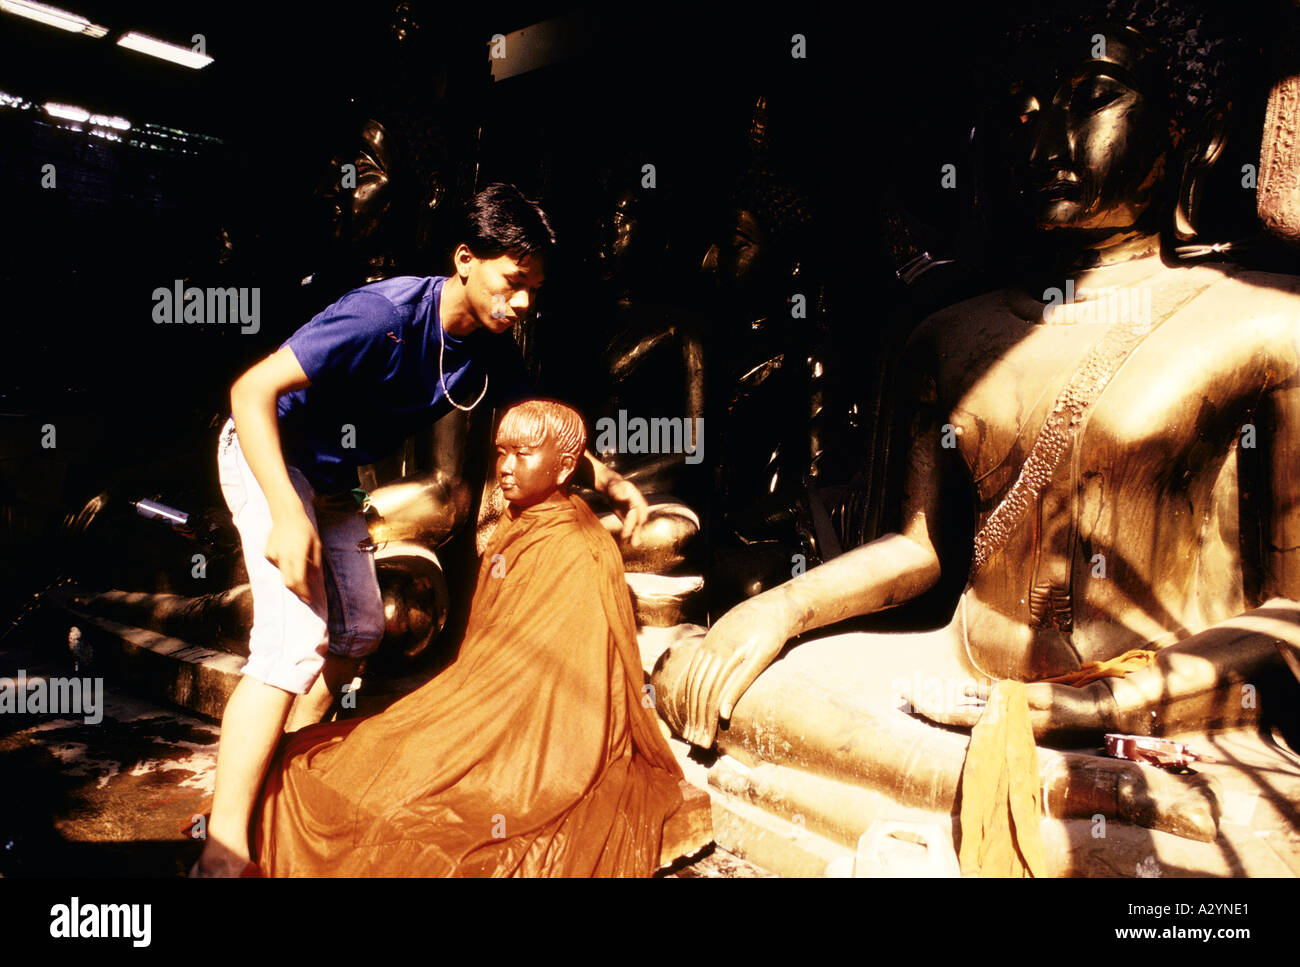 Un nettoyage de l'homme statue de Bouddha à la vente. Laque rouge est utilisé pour faire des Bouddhas chinois et de laiton pour Thai Bouddhas, Bangkok, Thaïlande Banque D'Images